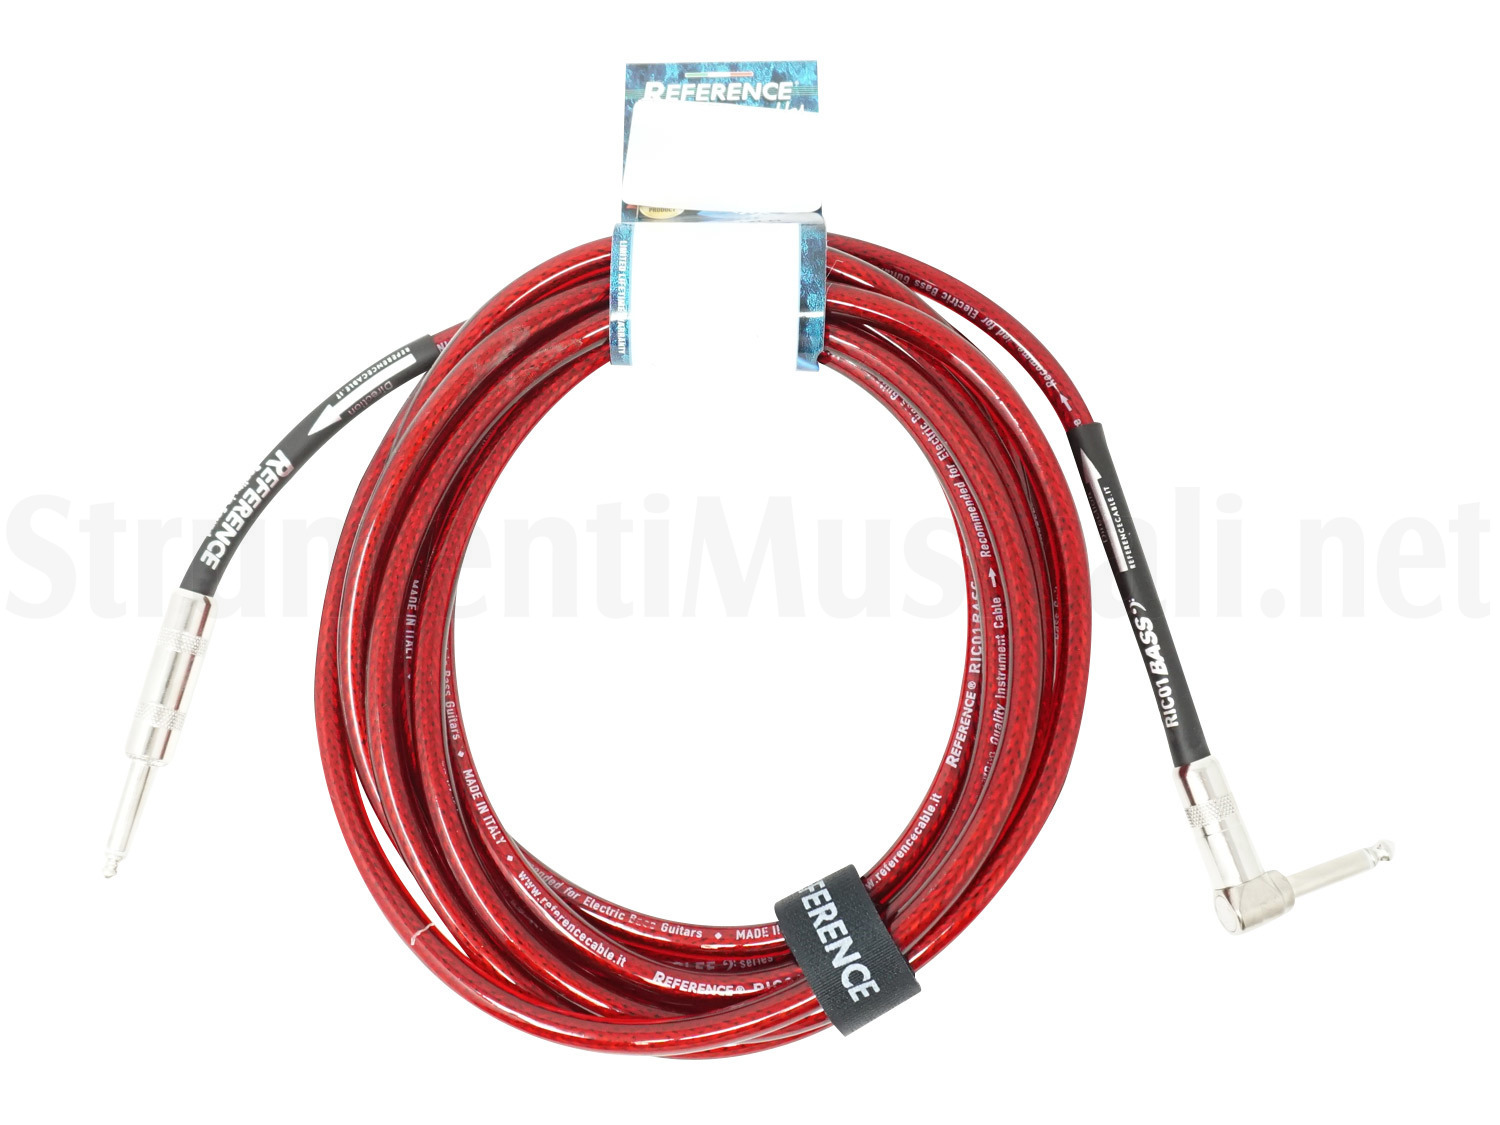 シリアルシール付 Reference Cables RIC01 BASS-RED ストレート?L字 3m